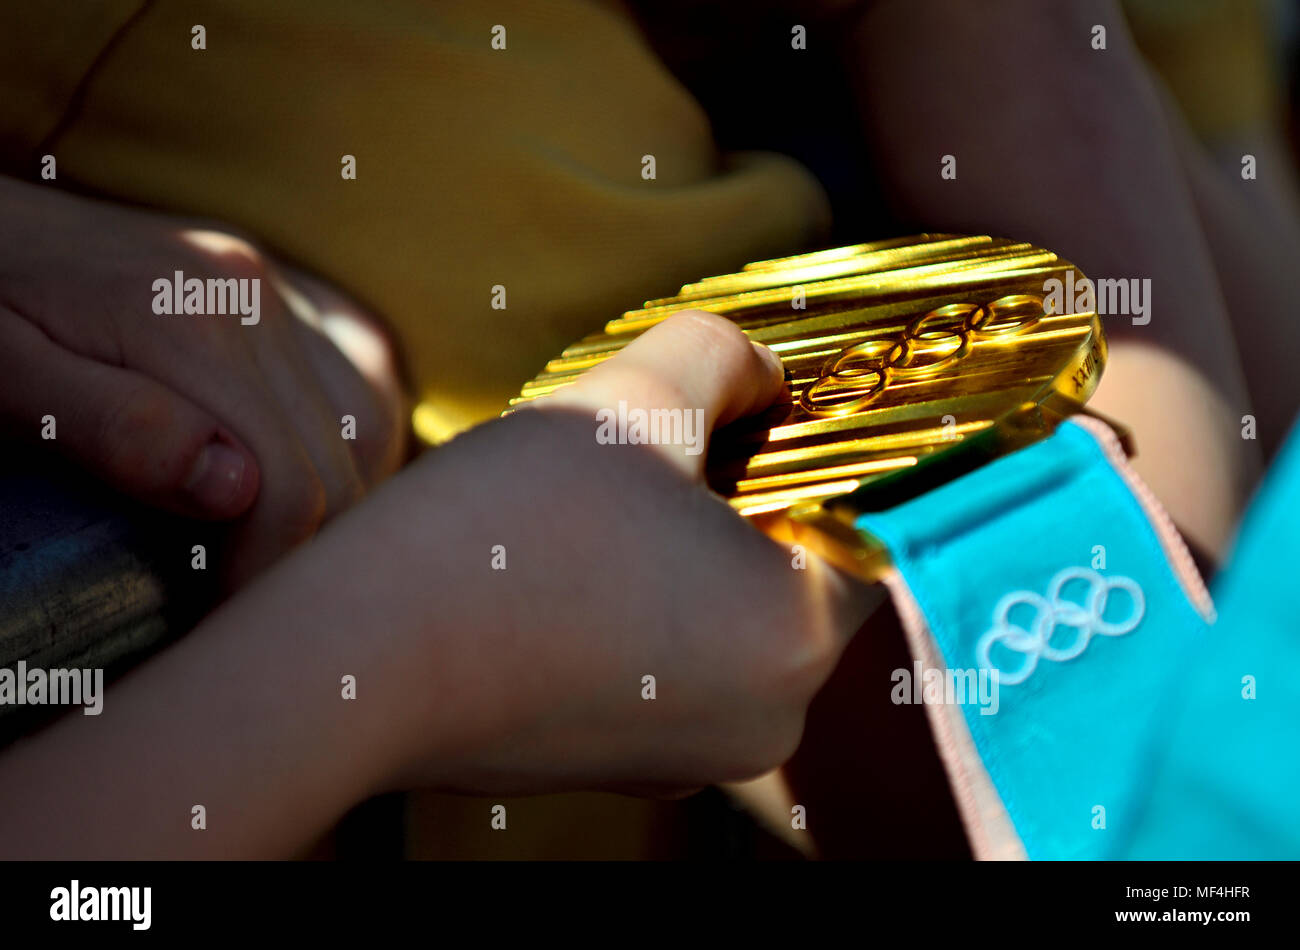 Inverno medaglia d'oro alle Olimpiadi - bambini holding Lizzy Yarnold lo scheletro di medaglia d'oro da PyongChang 2018 Foto Stock